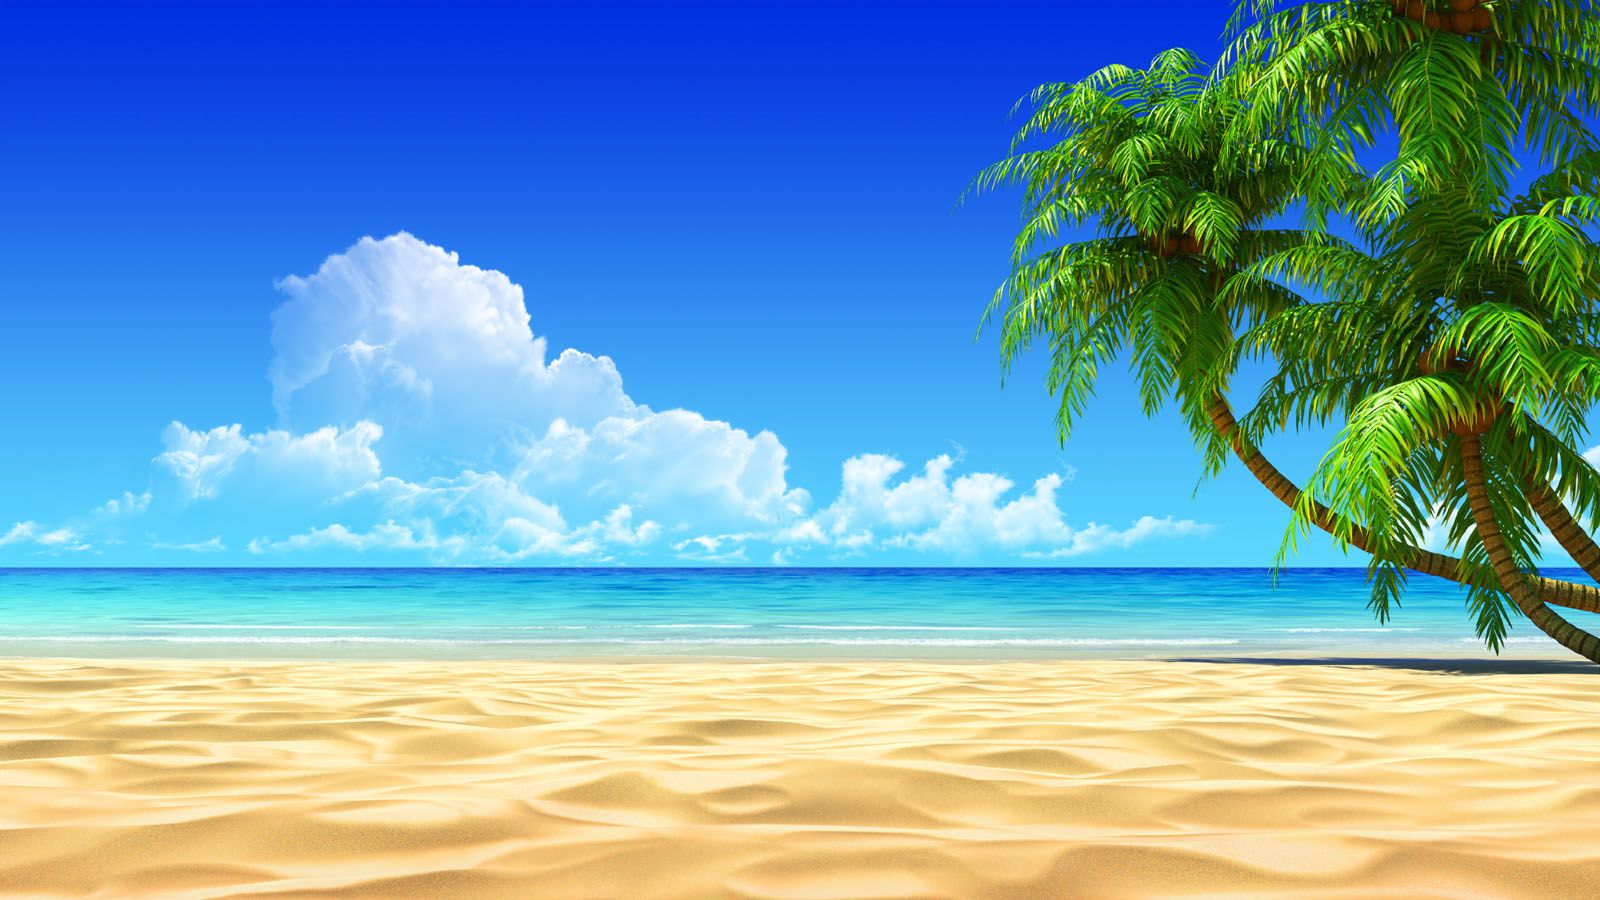 Hình nền cát bãi biển 3D sẽ khiến bạn như lạc vào khung cảnh thiên nhiên đầy màu sắc và tươi mới. Với hiệu ứng 3D, những đường nét và hình dáng các hạt cát sẽ được tái hiện đến chân thực. Hãy để màn hình điện thoại của bạn trở thành một bức tranh đầy sống động với hình nền cát bãi biển 3D này.